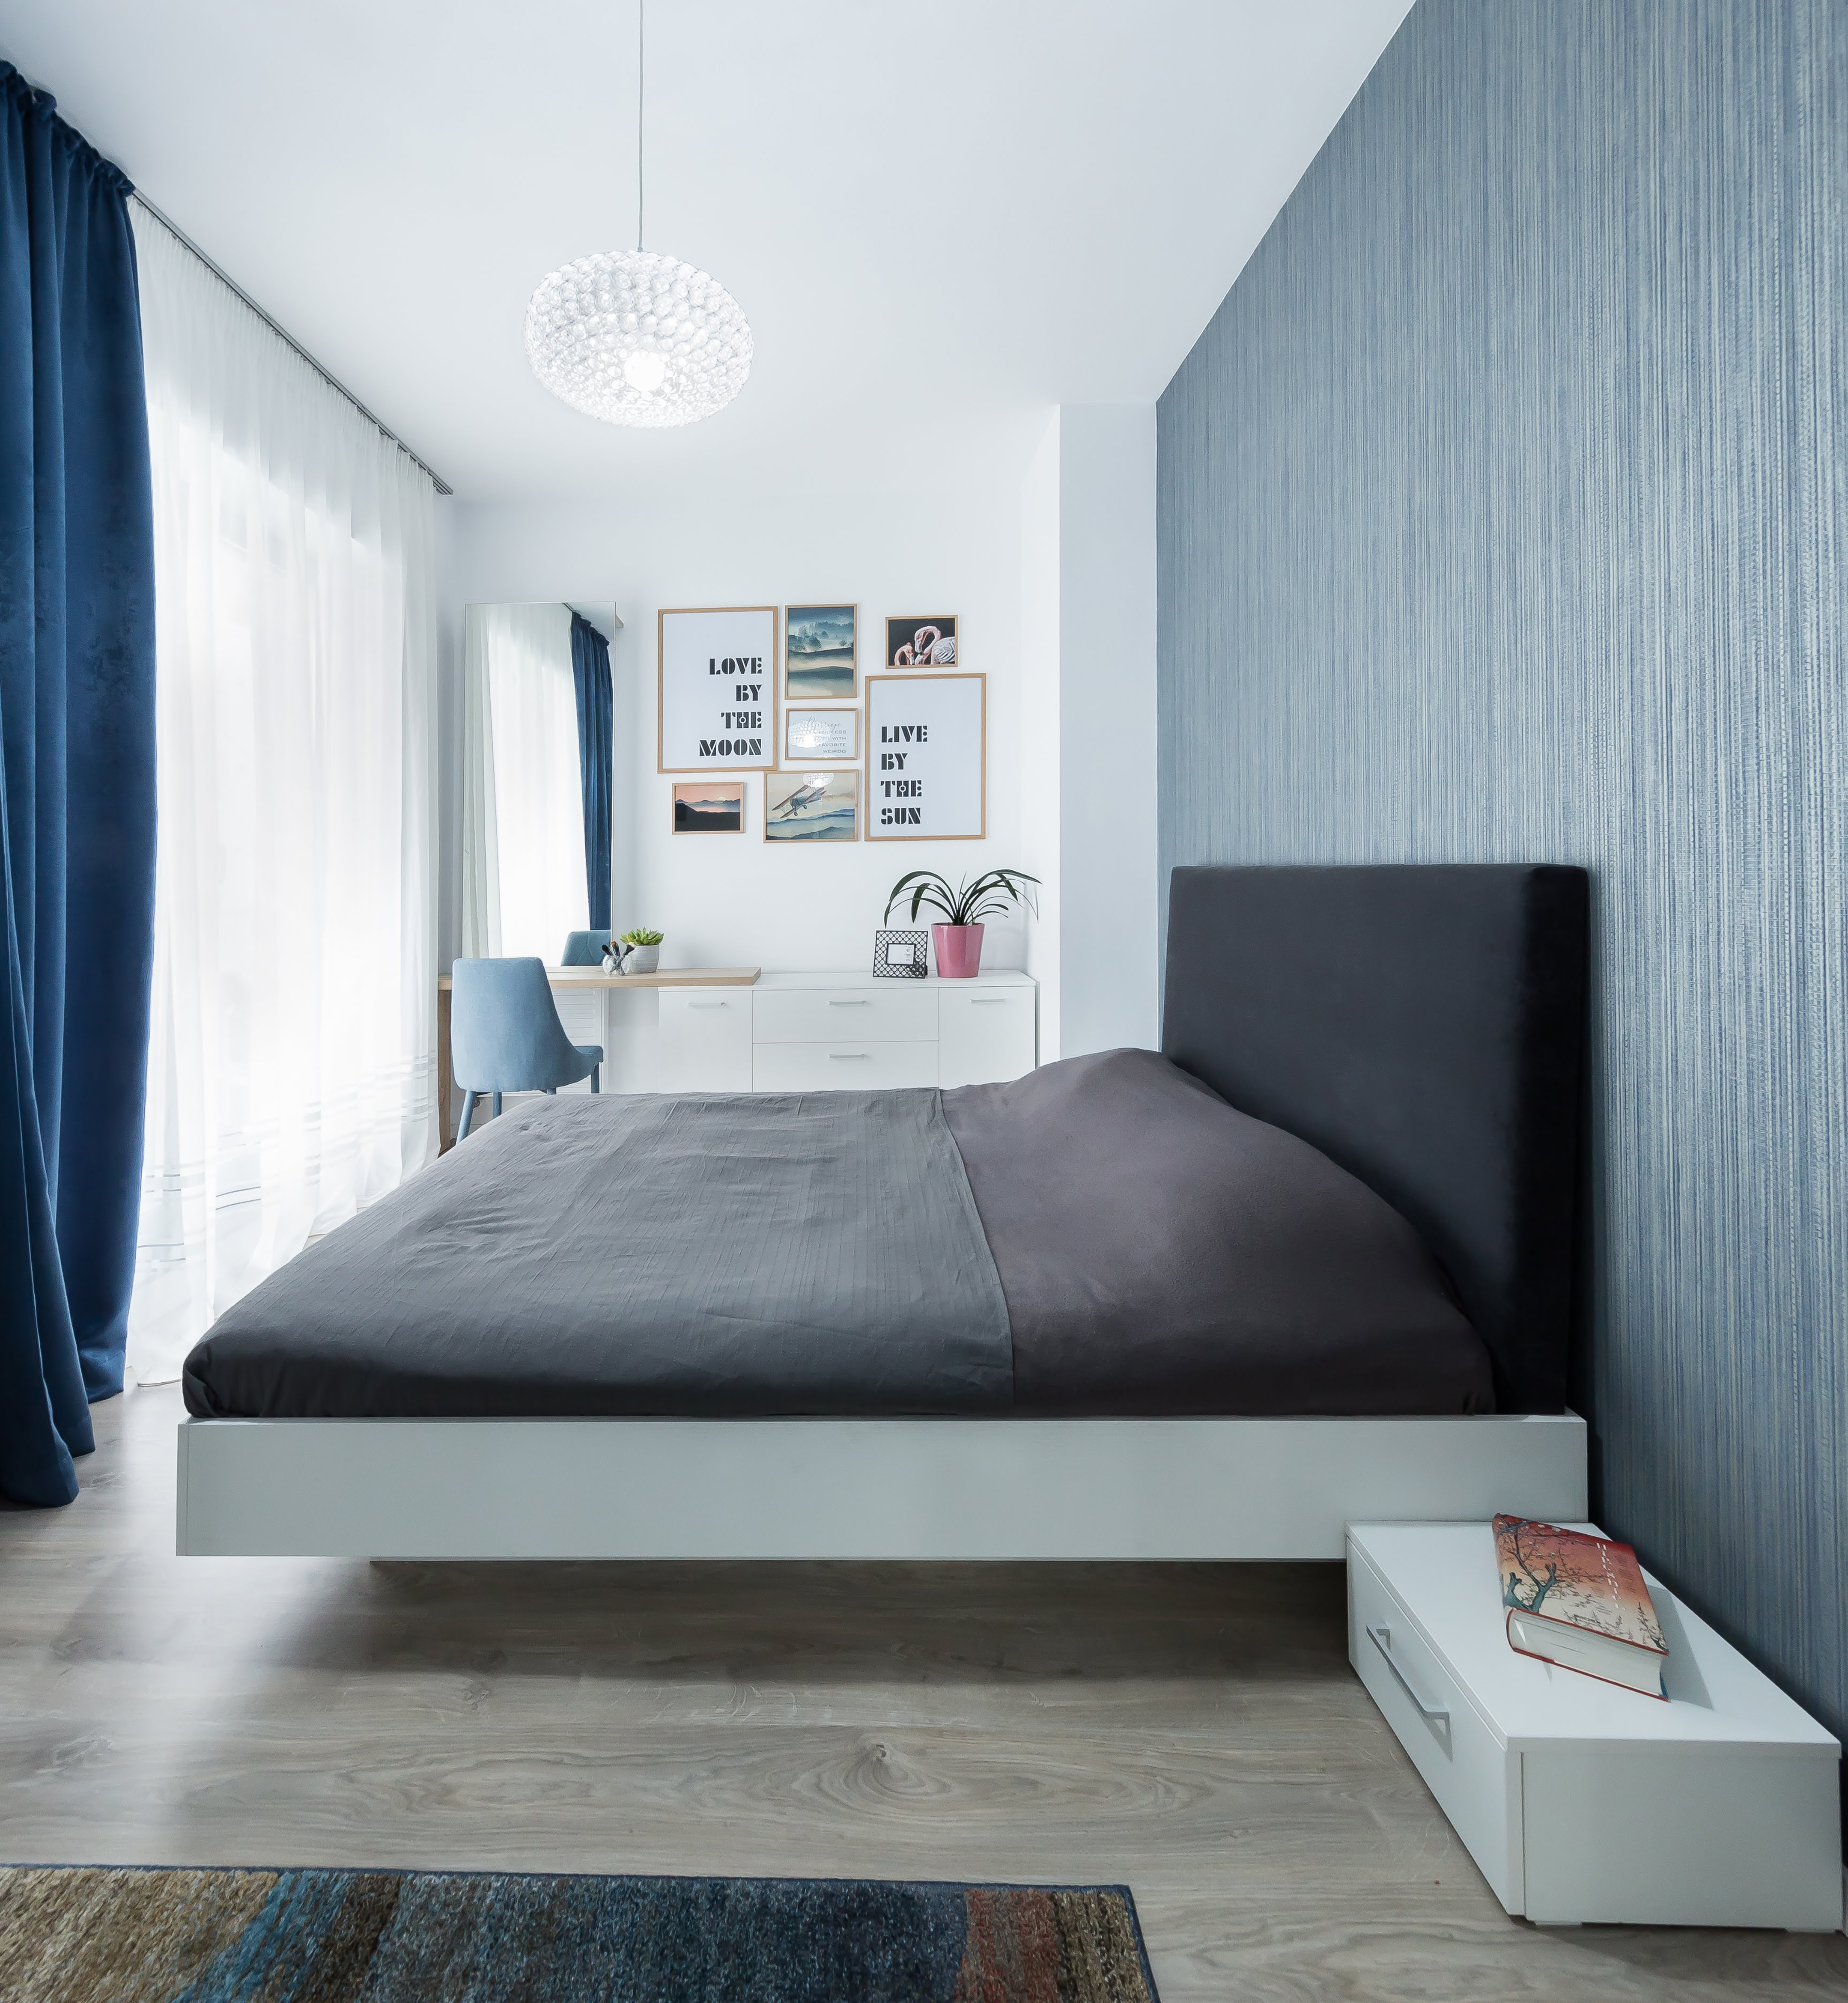 De subtiele blauwtint in de slaapkamer heeft niet alleen een kalmerend effect, maar fungeert ook als lichtschaduw. Het bed is groot in omvang, maar ziet er toch stijlvol en tijdloos uit dankzij het robuuste donkergrijze frame.